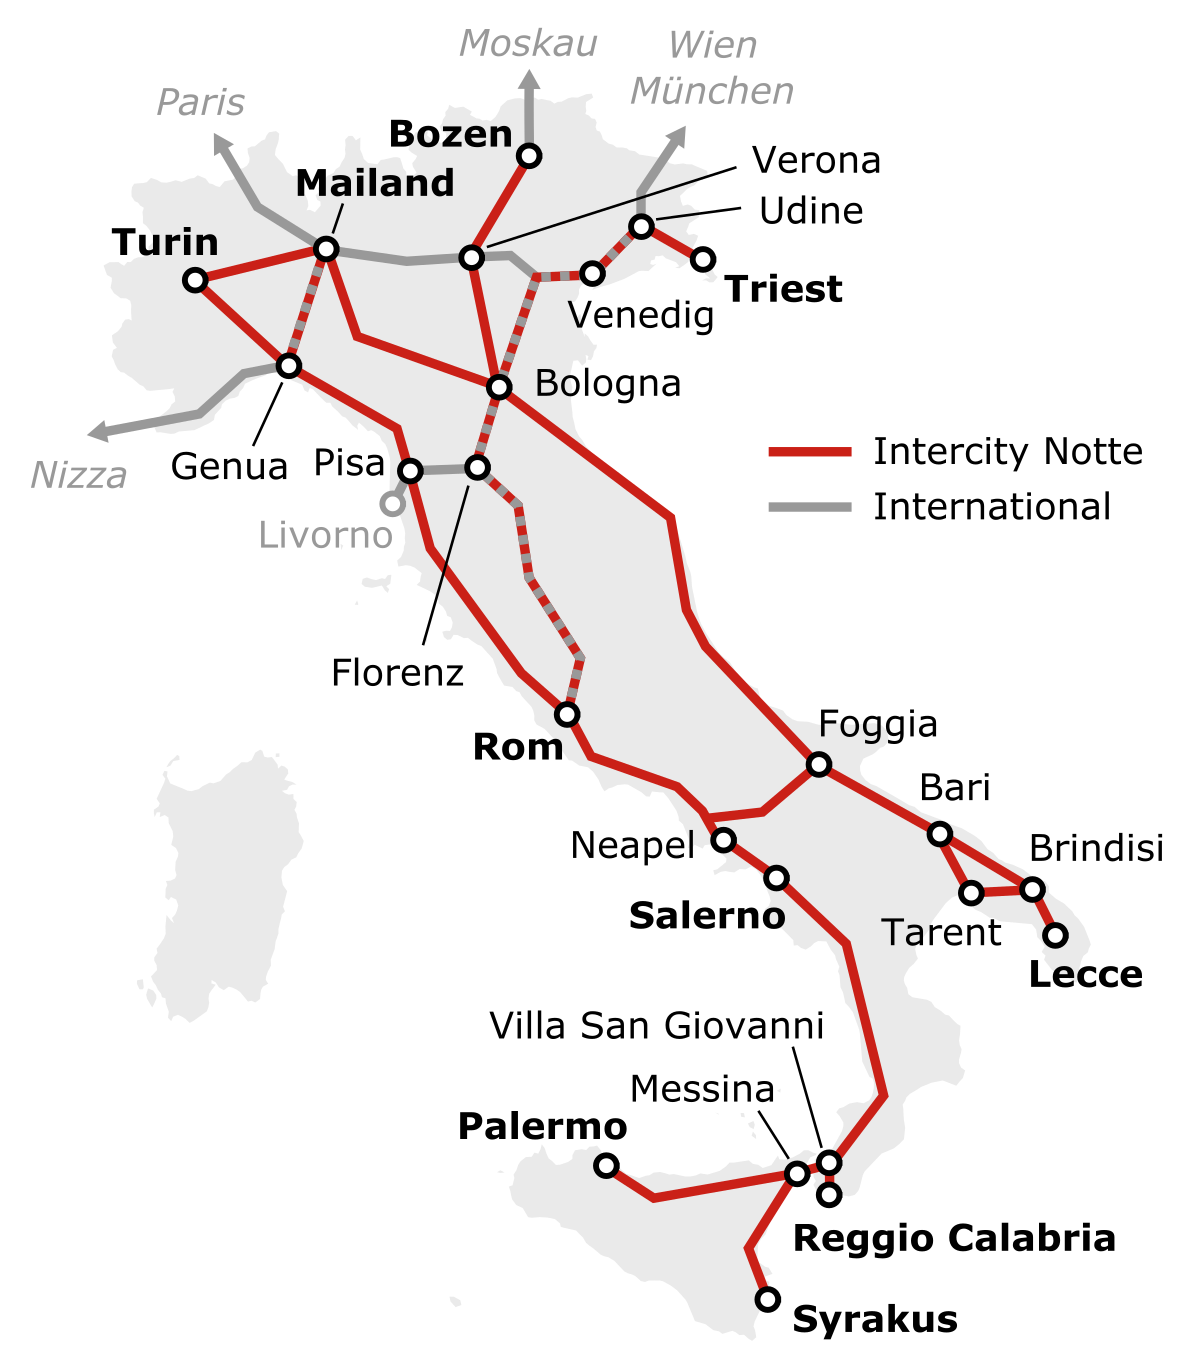 Nachtzug Netz in Italien mit Intercity Notte Linien und internationalen Nachtzügen